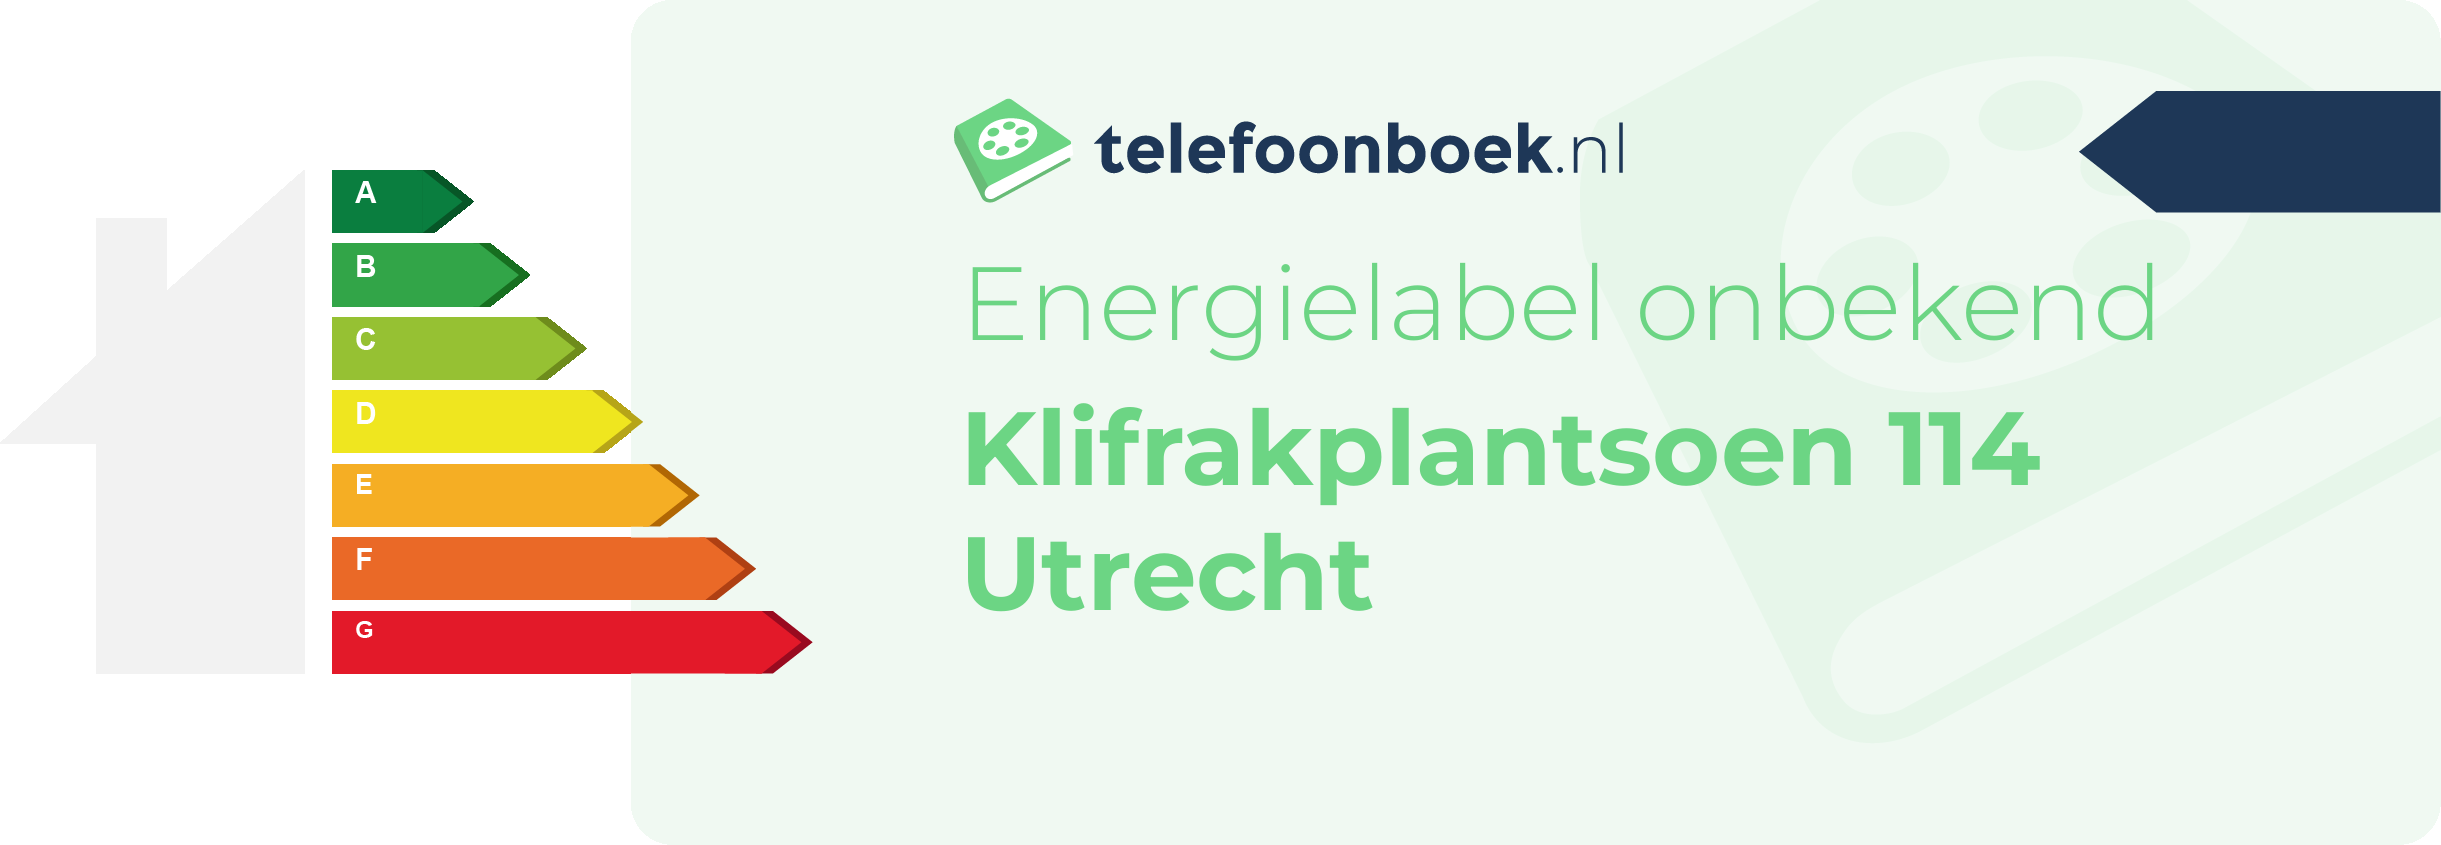 Energielabel Klifrakplantsoen 114 Utrecht